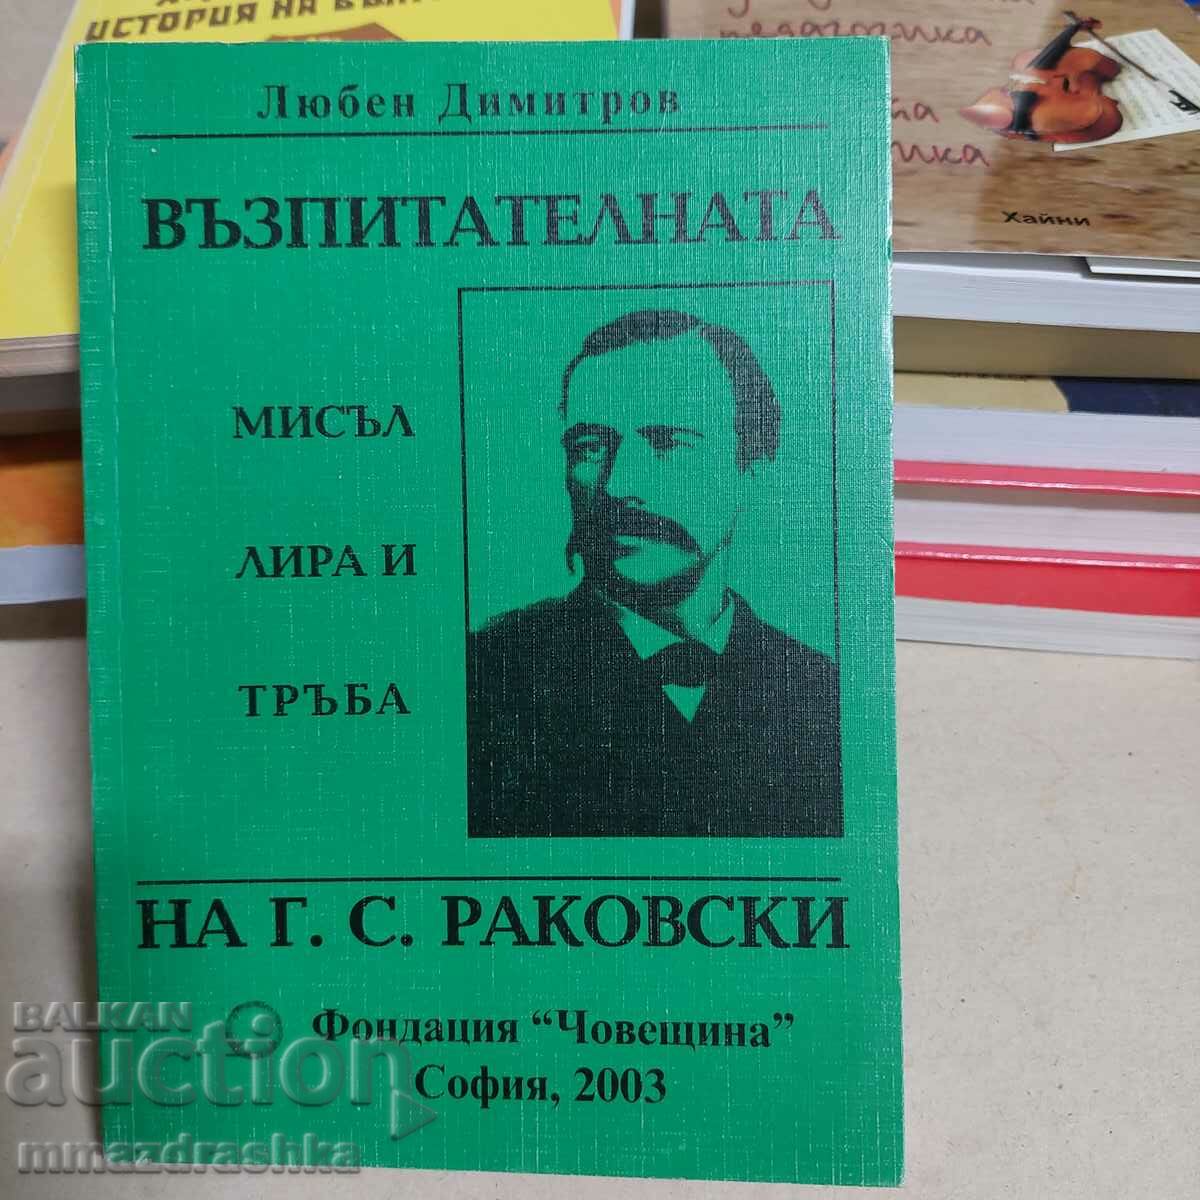 Book by Leda Mileva, Rakovski...thought...L. Dimitrov